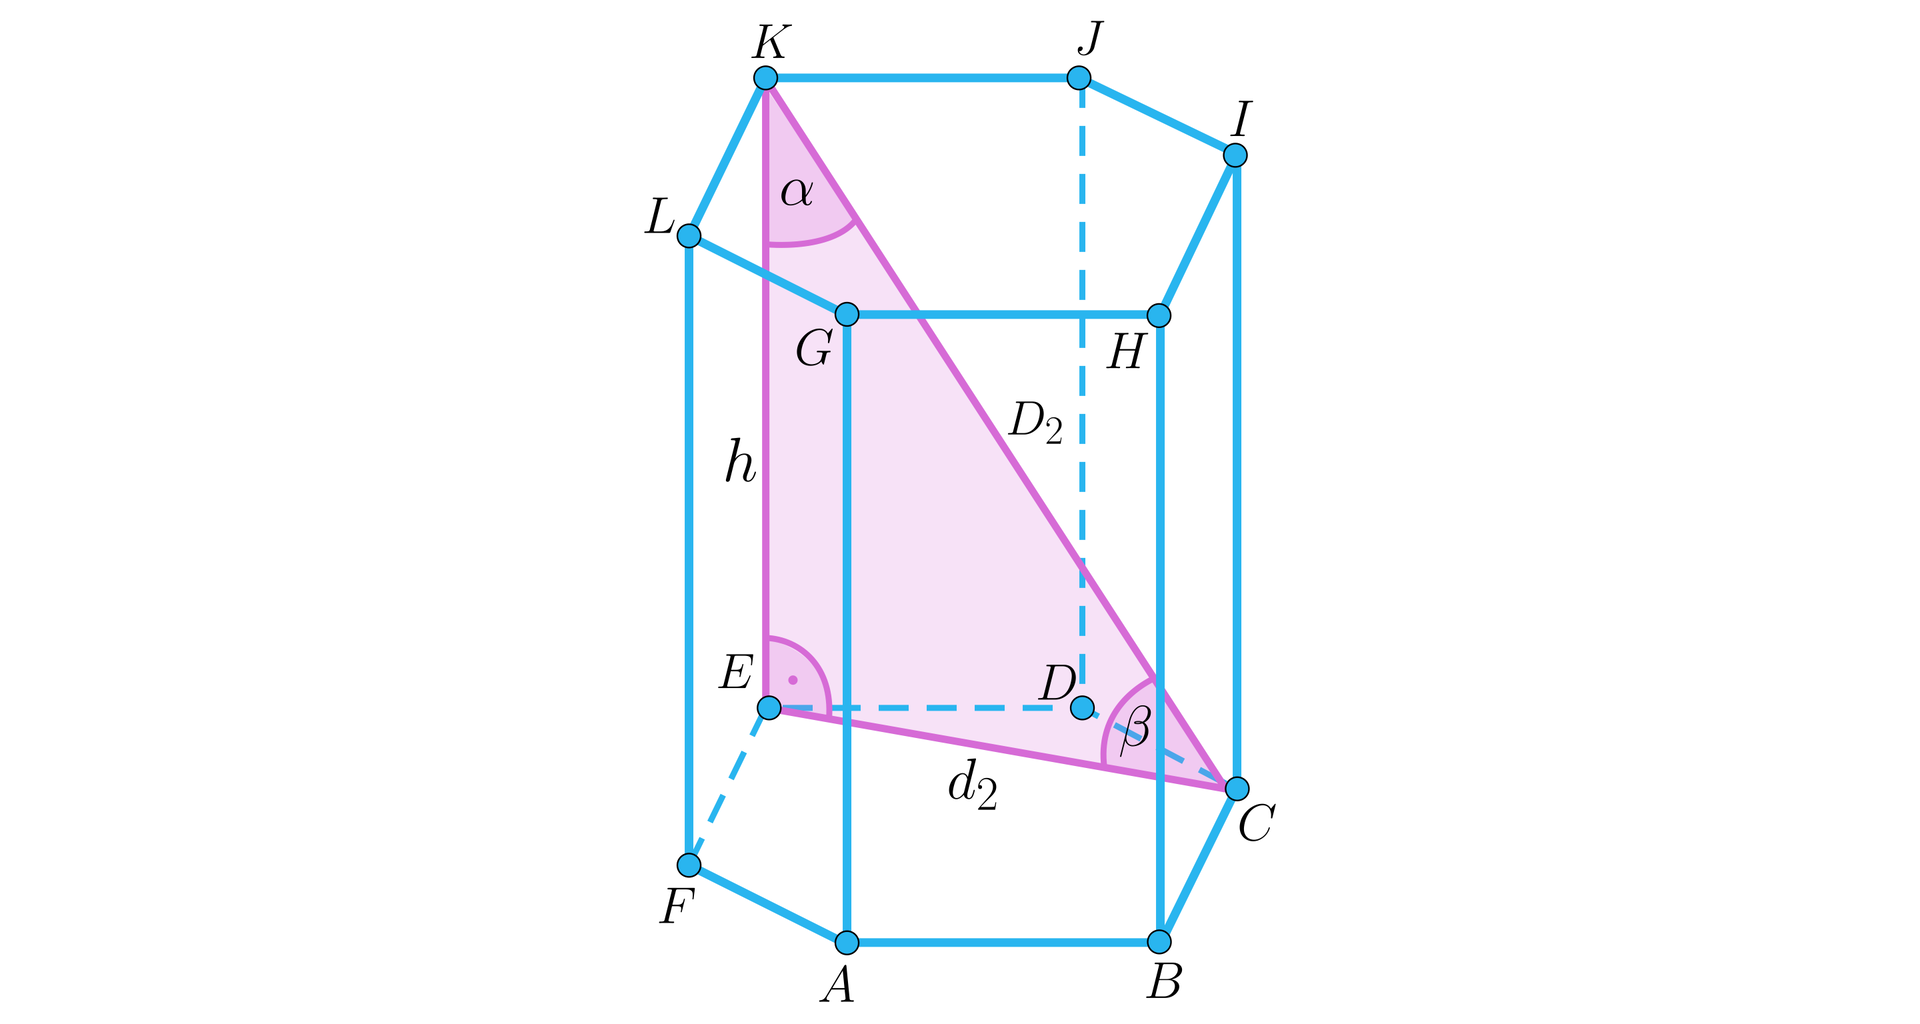 Na ilustracji przedstawiono graniastosłup prawidłowy sześciokątny o podstawie dolnej ABCDEF, oraz górnej odpowiednio GHIJKL, i wysokości h, oznaczonej jako krawędź E K. Zaznaczono przekątną bryły oznaczoną wielka litera D indeks dolny dwa koniec indeksu, czyli odcinek C K, oraz krótszą dolnej podstawy oznaczoną d2, czyli odcinek E C. Zaznaczono trójkąt prostokątny ECK, o przyprostokątnych d2, czyli E C oraz h, czyli odcinek E K, oraz przeciwprostokątnej  wielka litera D indeks dolny dwa koniec indeksu, czyli odcinek K C. Przy wierzchołku K zaznaczono kąt α, przy wierzchołku C zaznaczono kąt β, natomiast kąt przy wierzchołku E jest kątem prostym. 